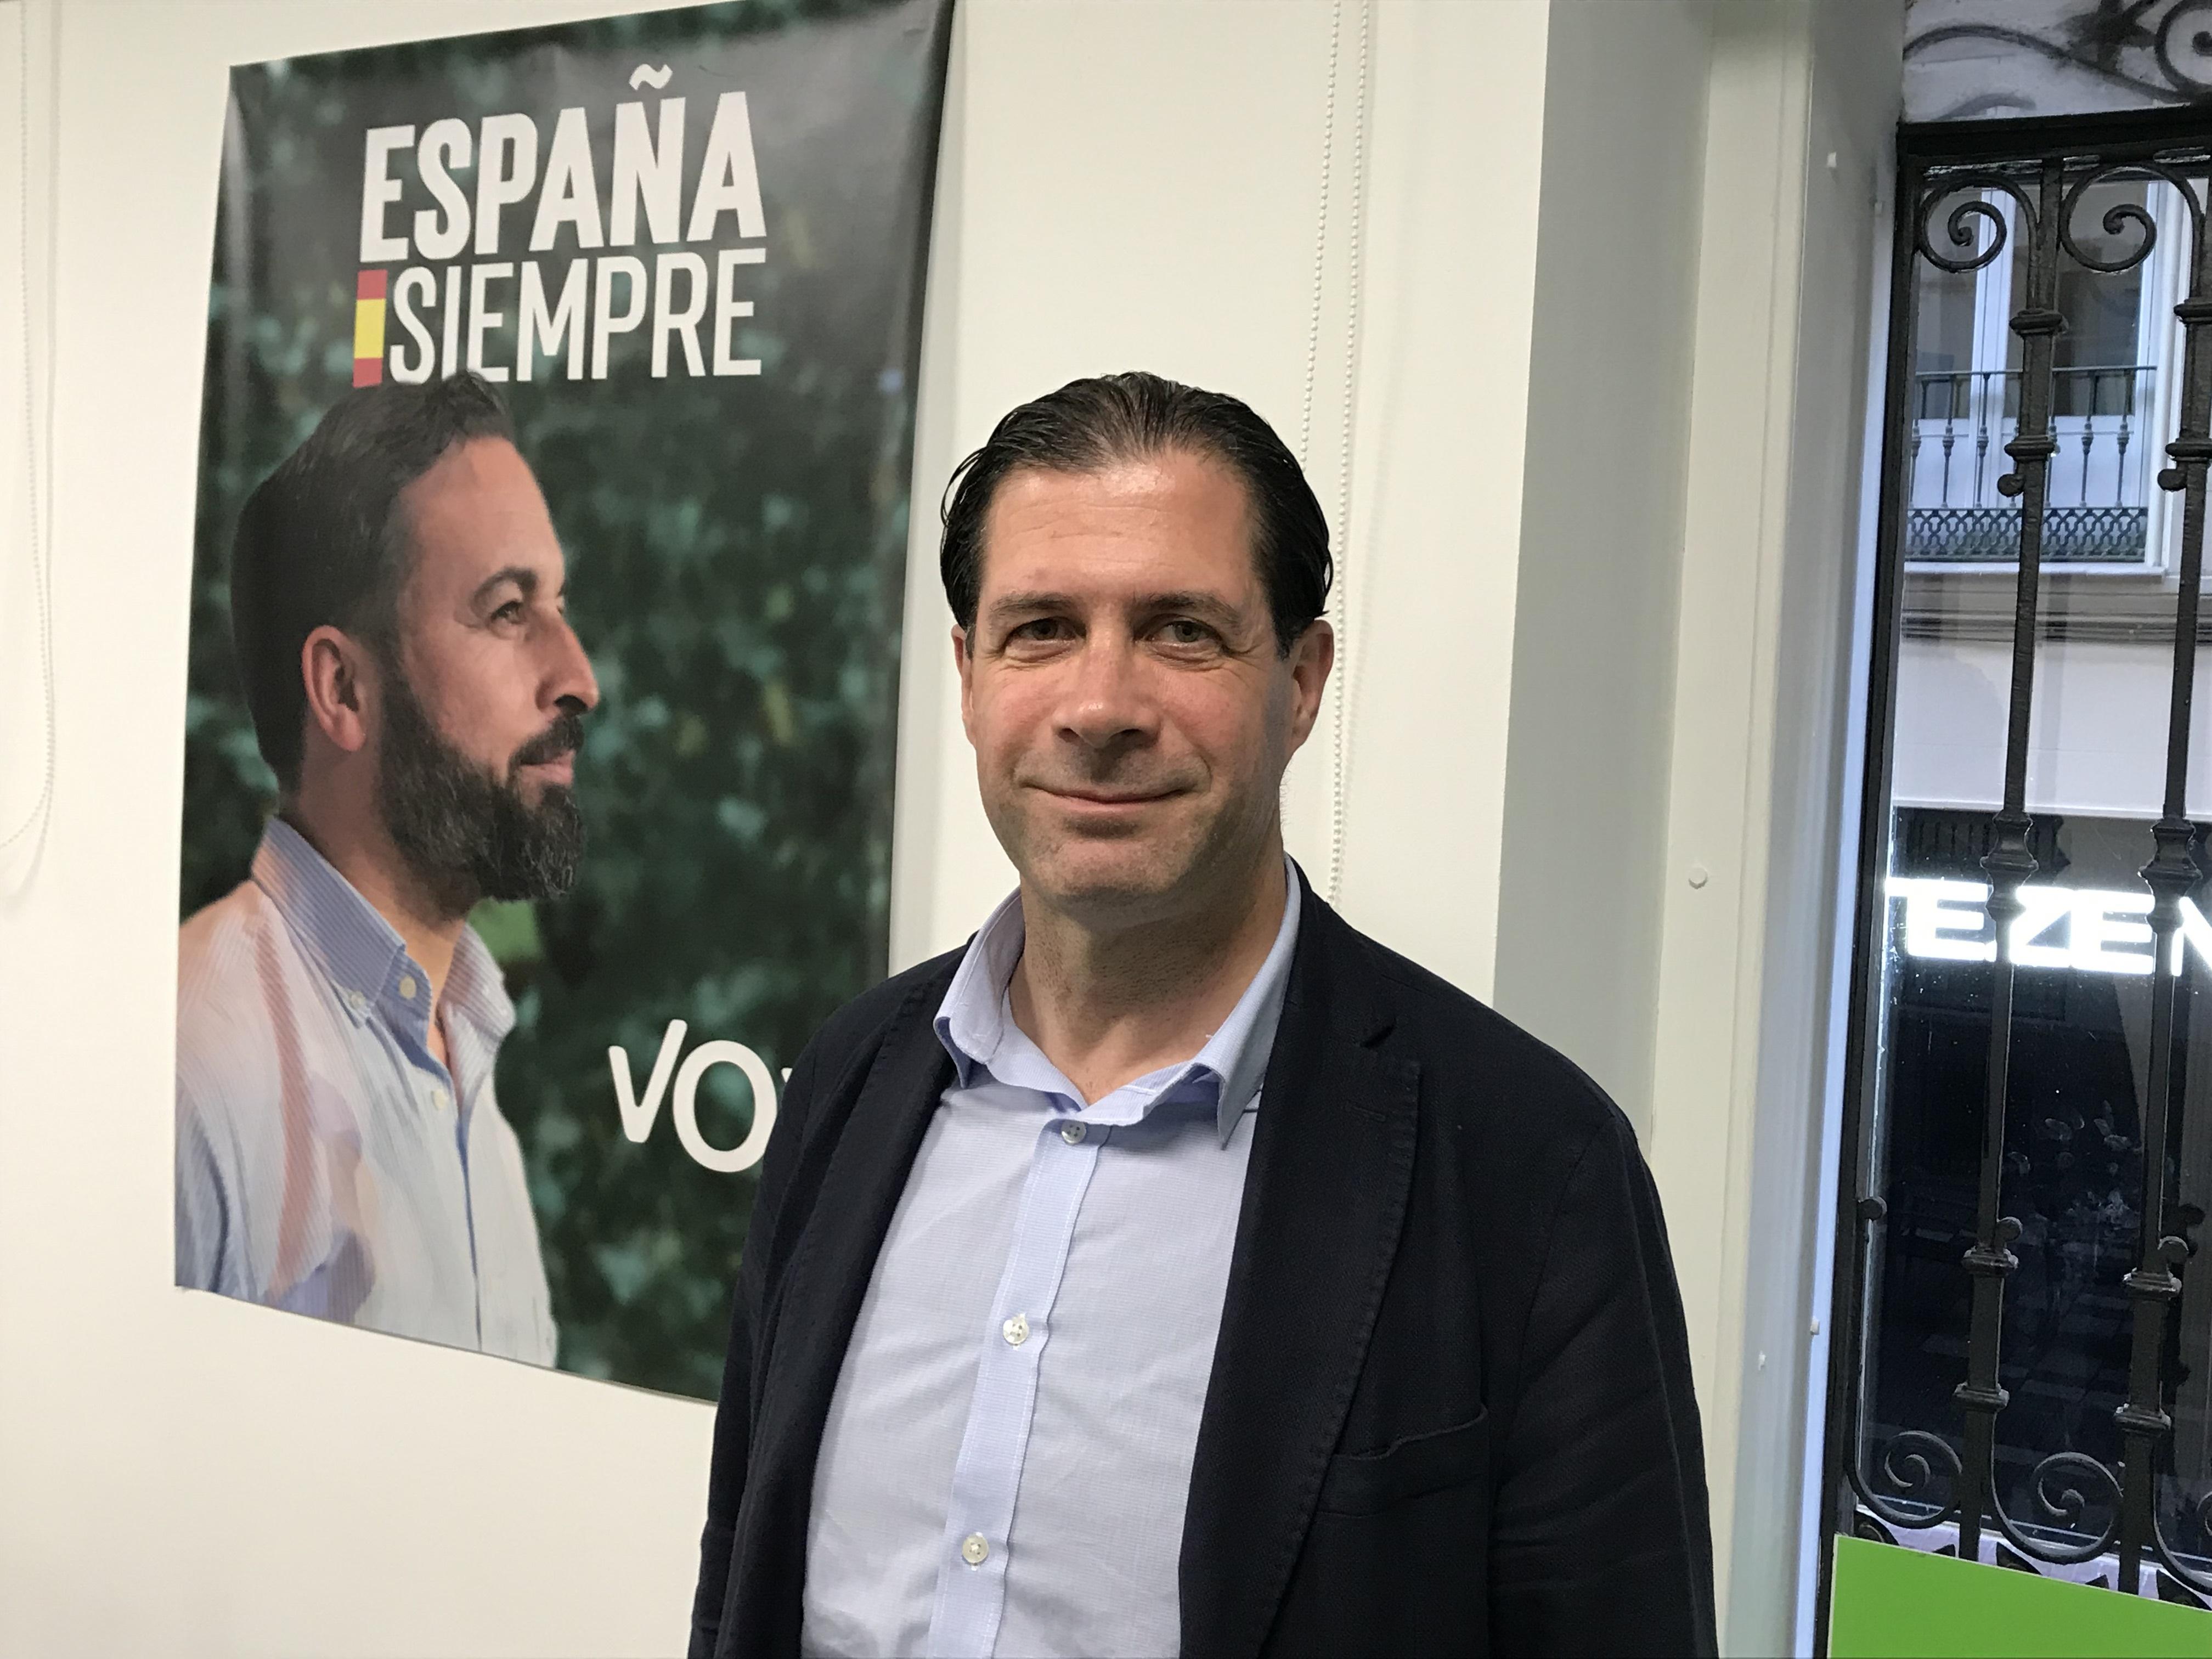 El candidato de Vox Zaragoza al Congreso de los Diputados Pedro Fernández. EuropaPress